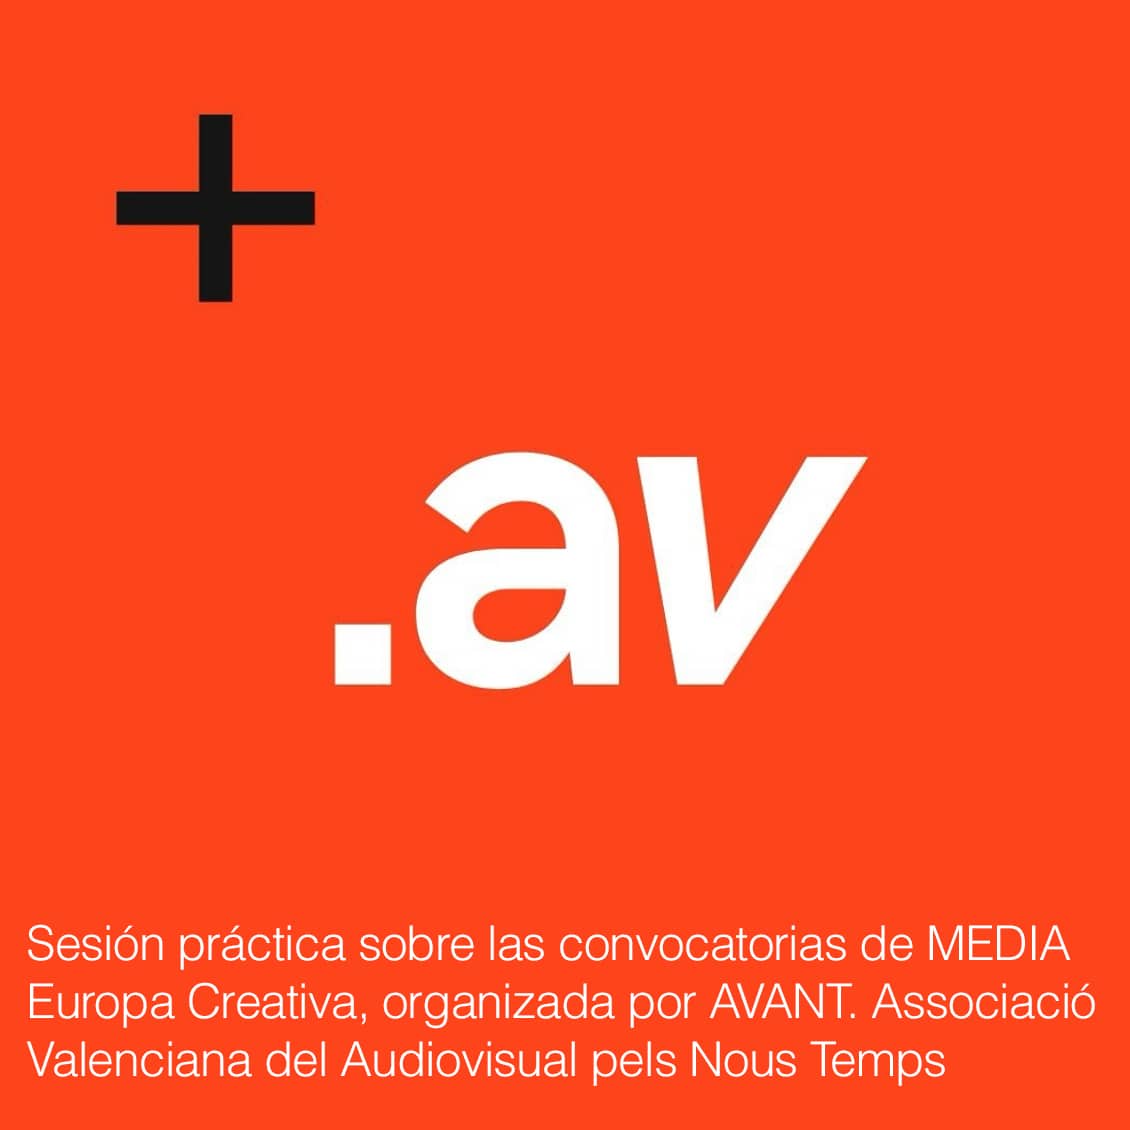 AVANT. Associació Valenciana del Audiovisual pels Nous Temps.